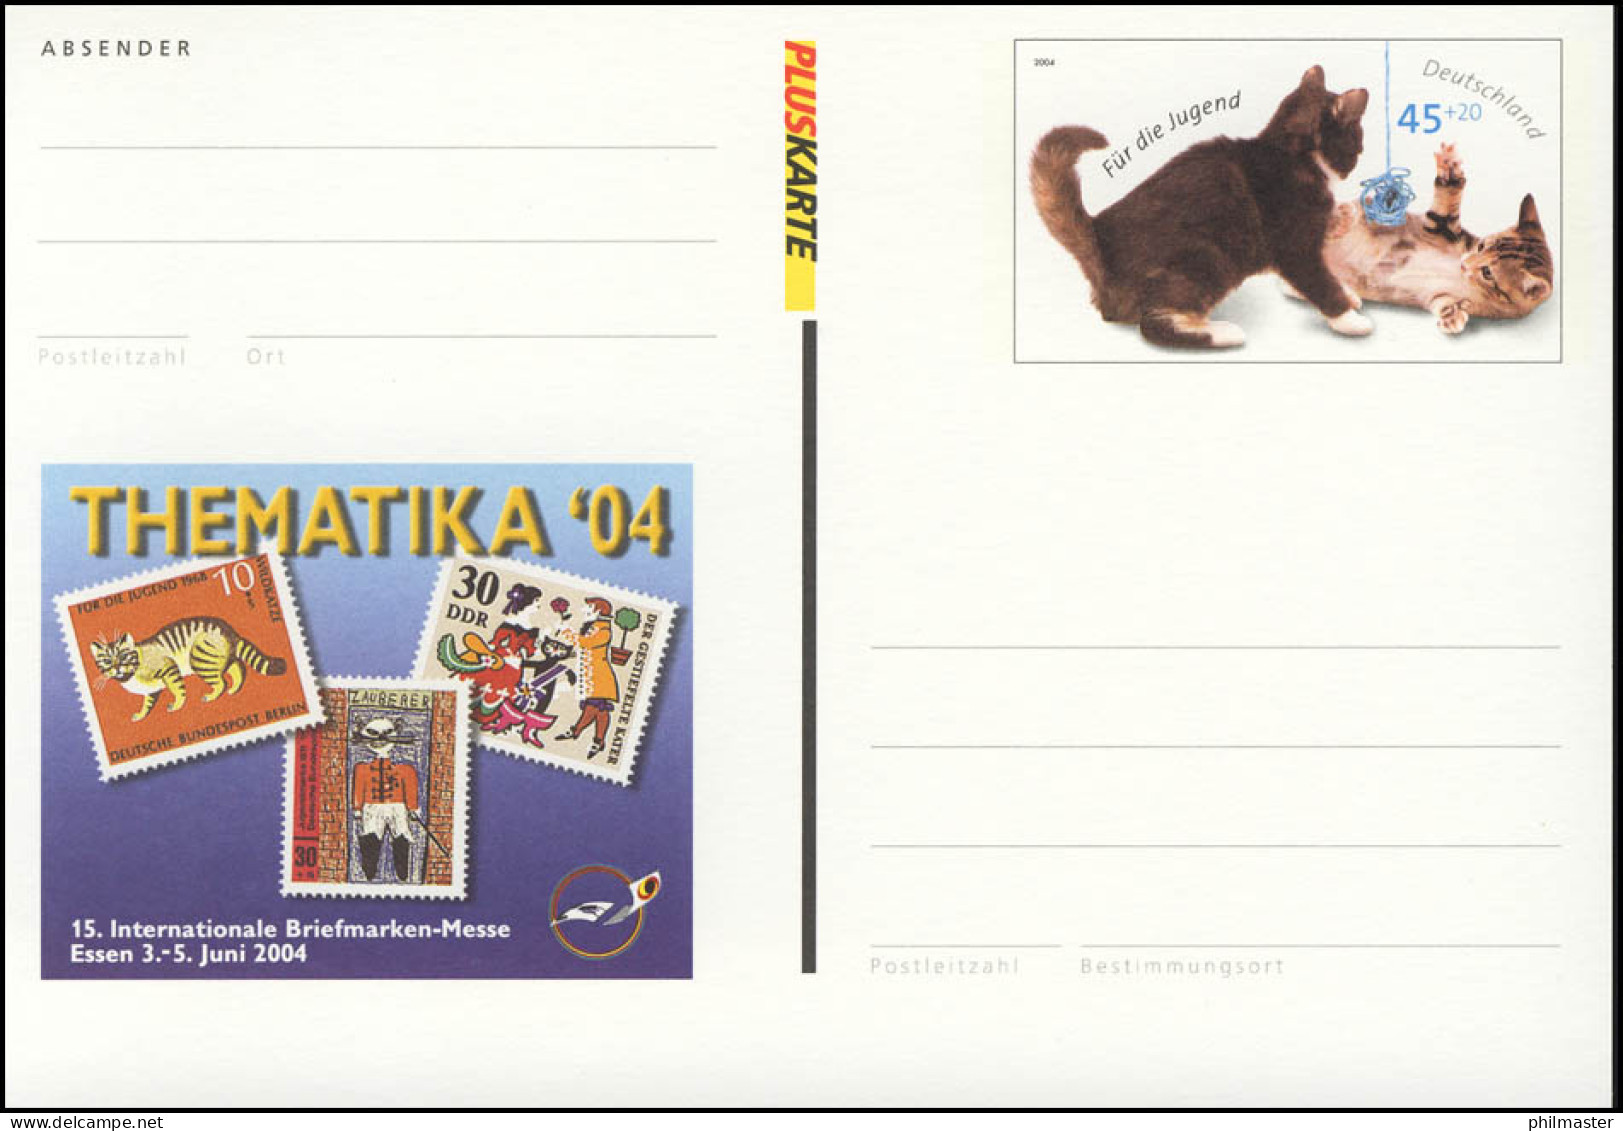 PSo 85 Messe Essen & Thematika Katzen 2004, ** Wie Verausgabt - Postkarten - Ungebraucht